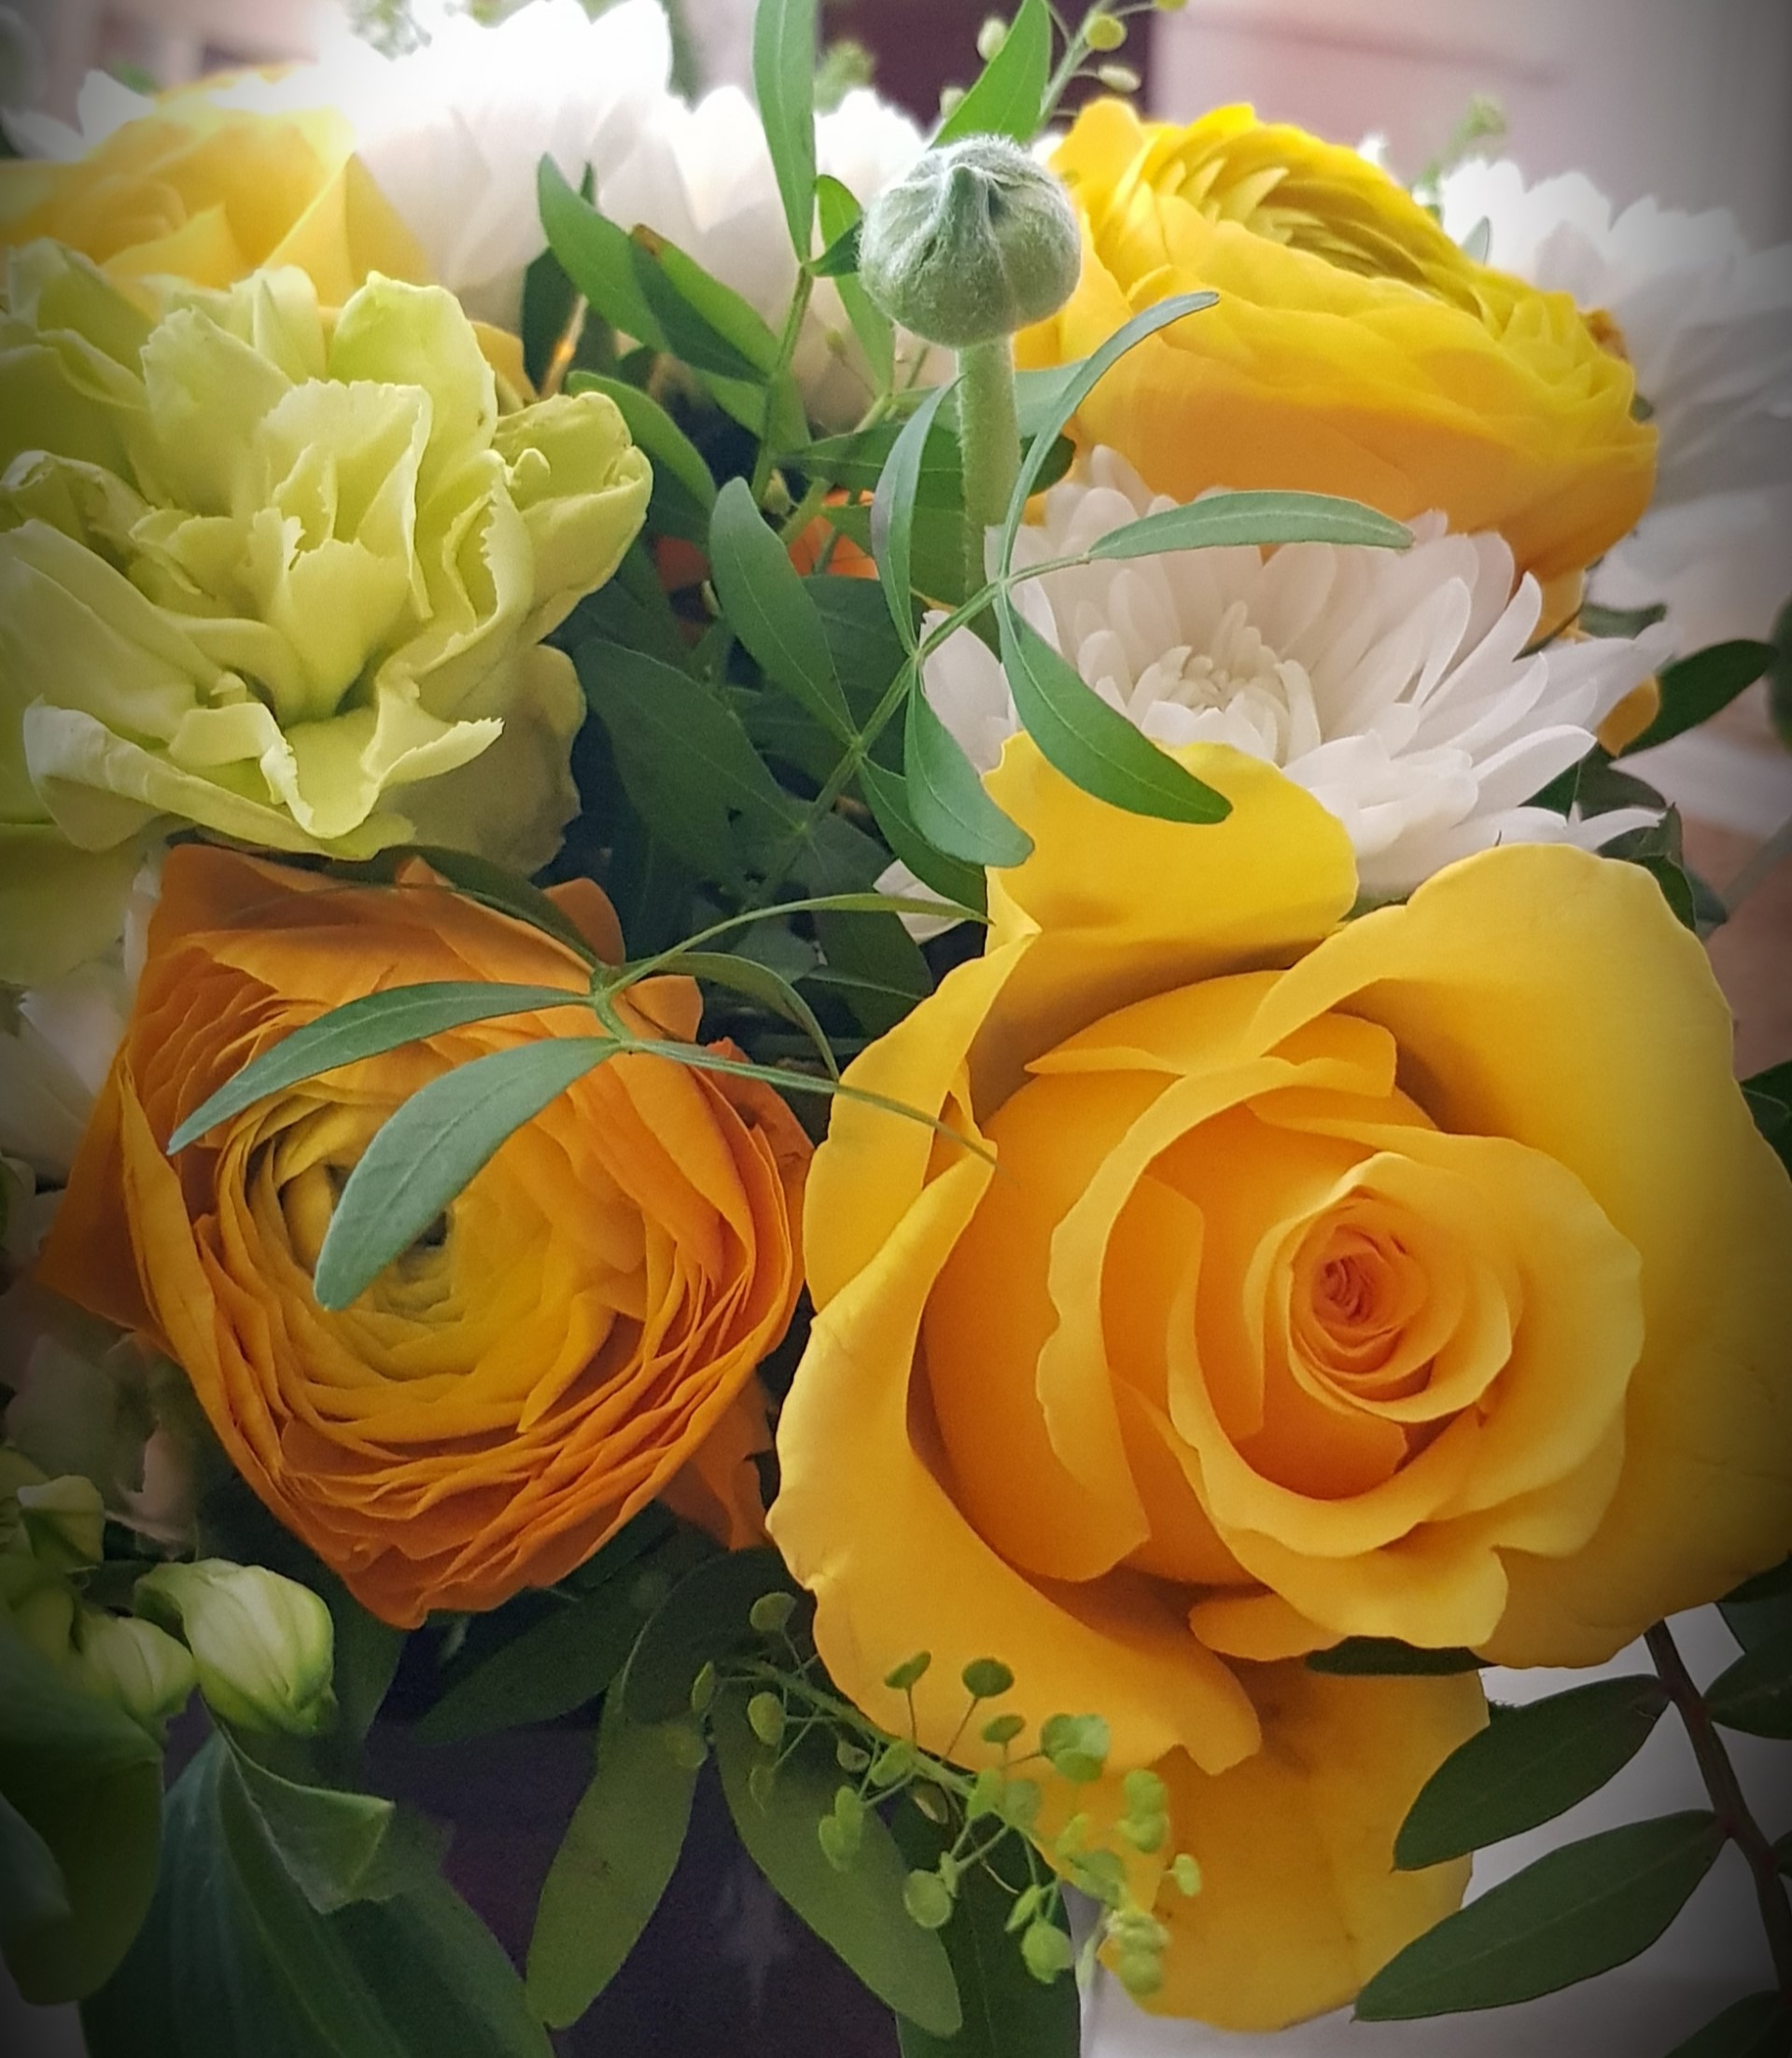 Kuvassa on keltainen ruusu ja jaloleinikki ja muita kevään kukkia.